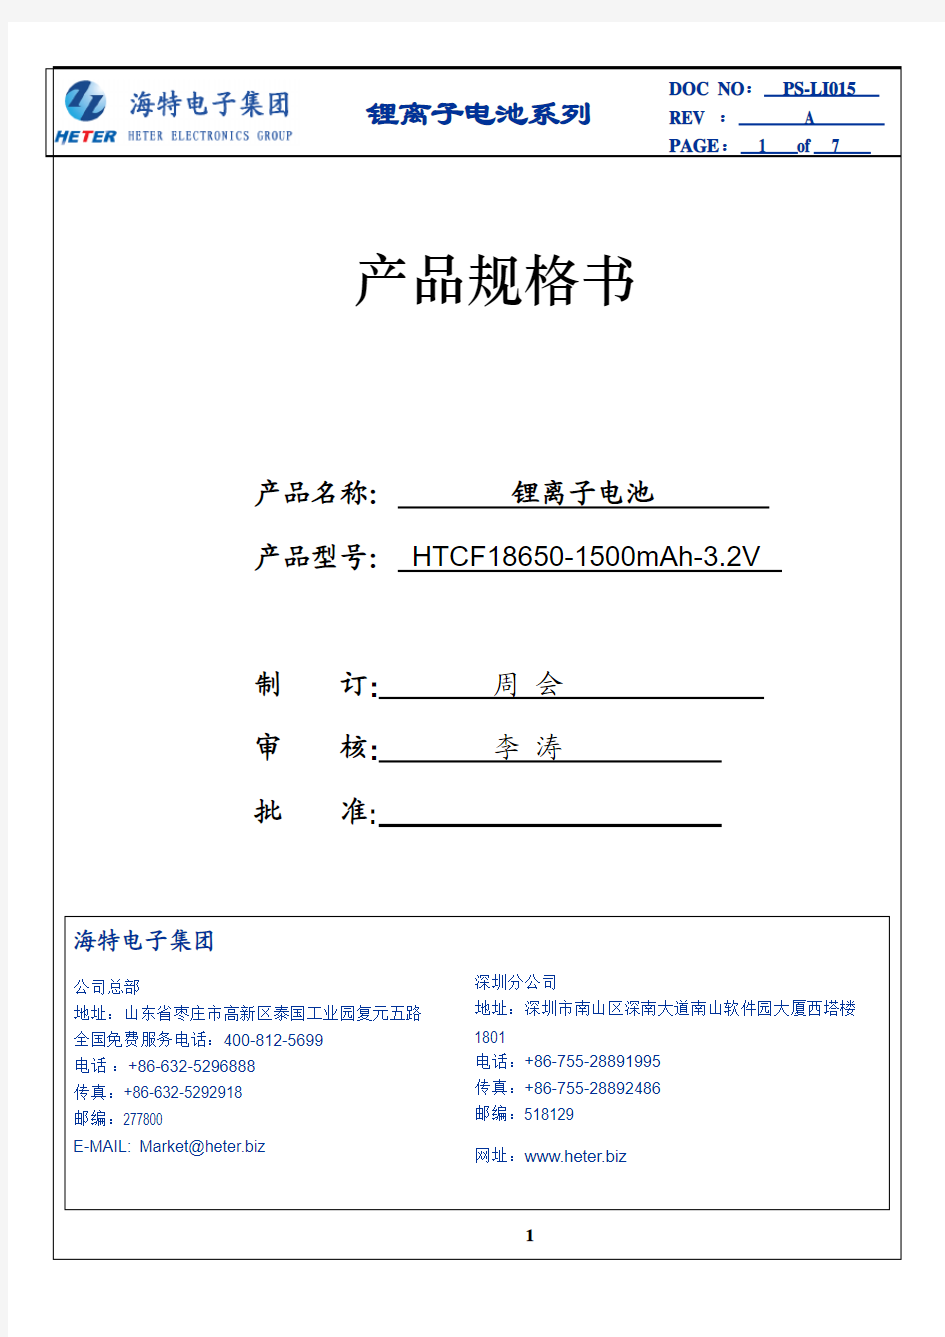 磷酸铁锂电池 18650-1500-3.2V(无PTC)中文规格书蒋合你好